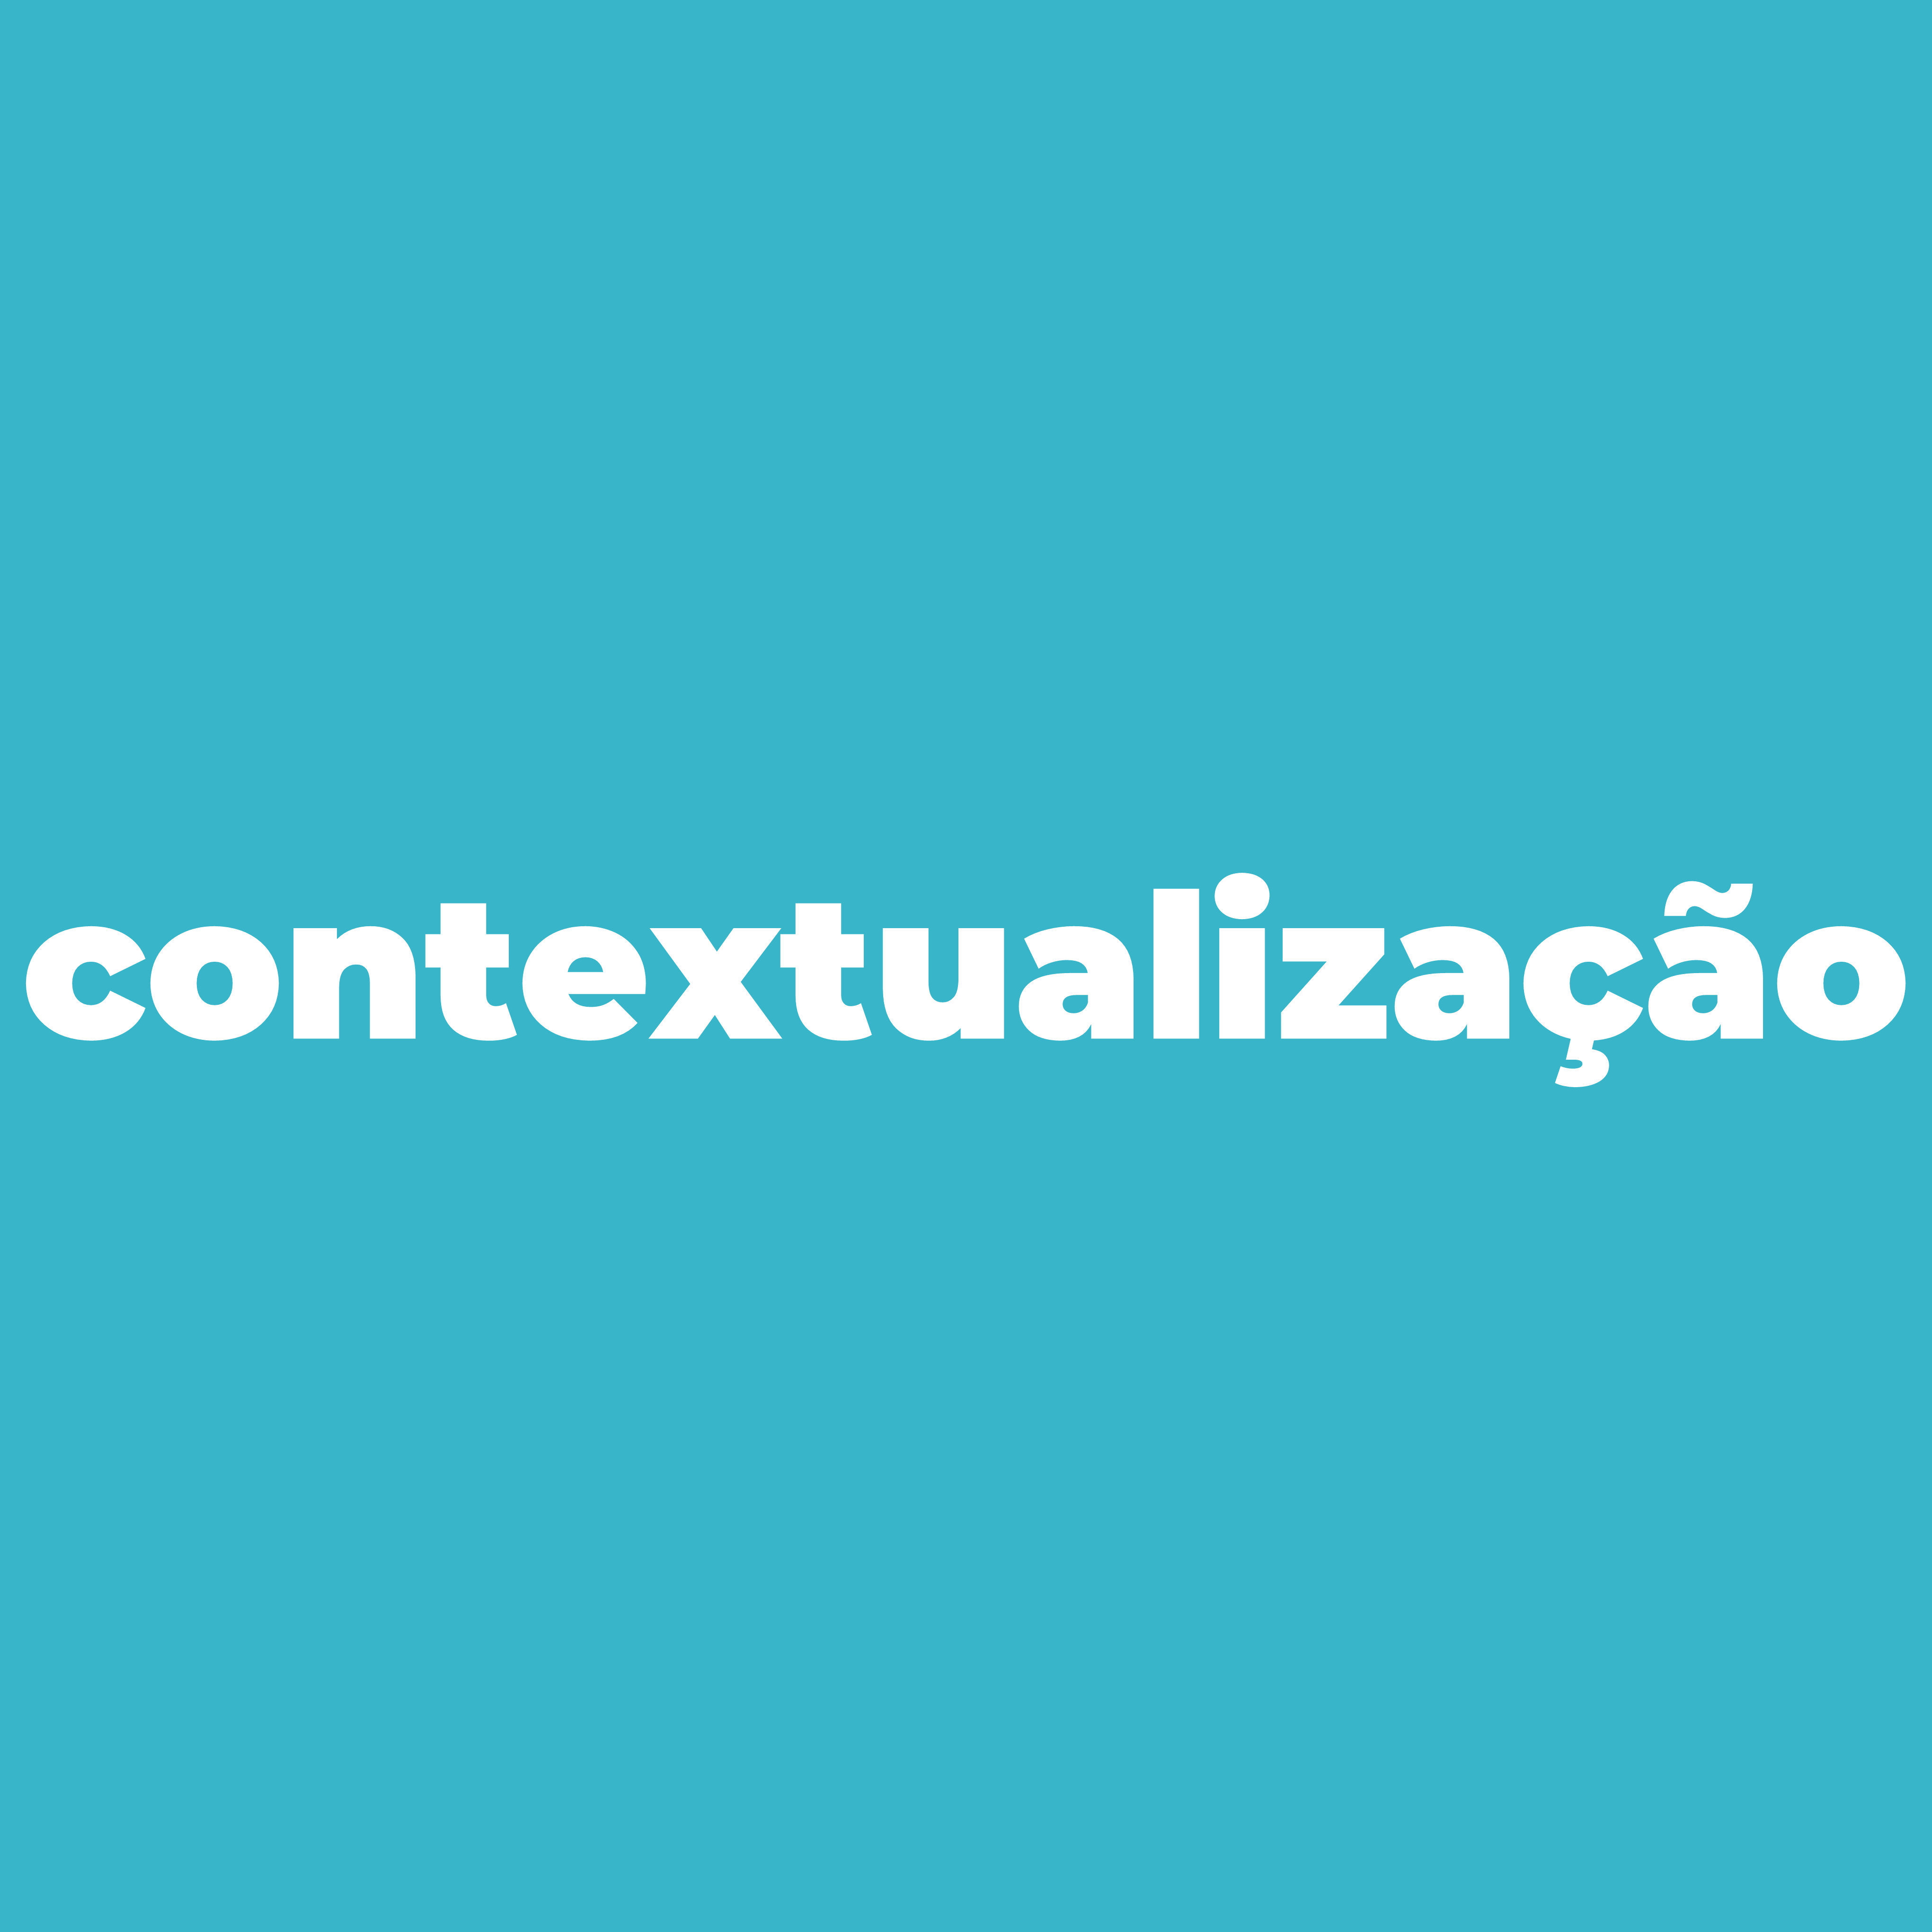 contextualiza__o2.png>